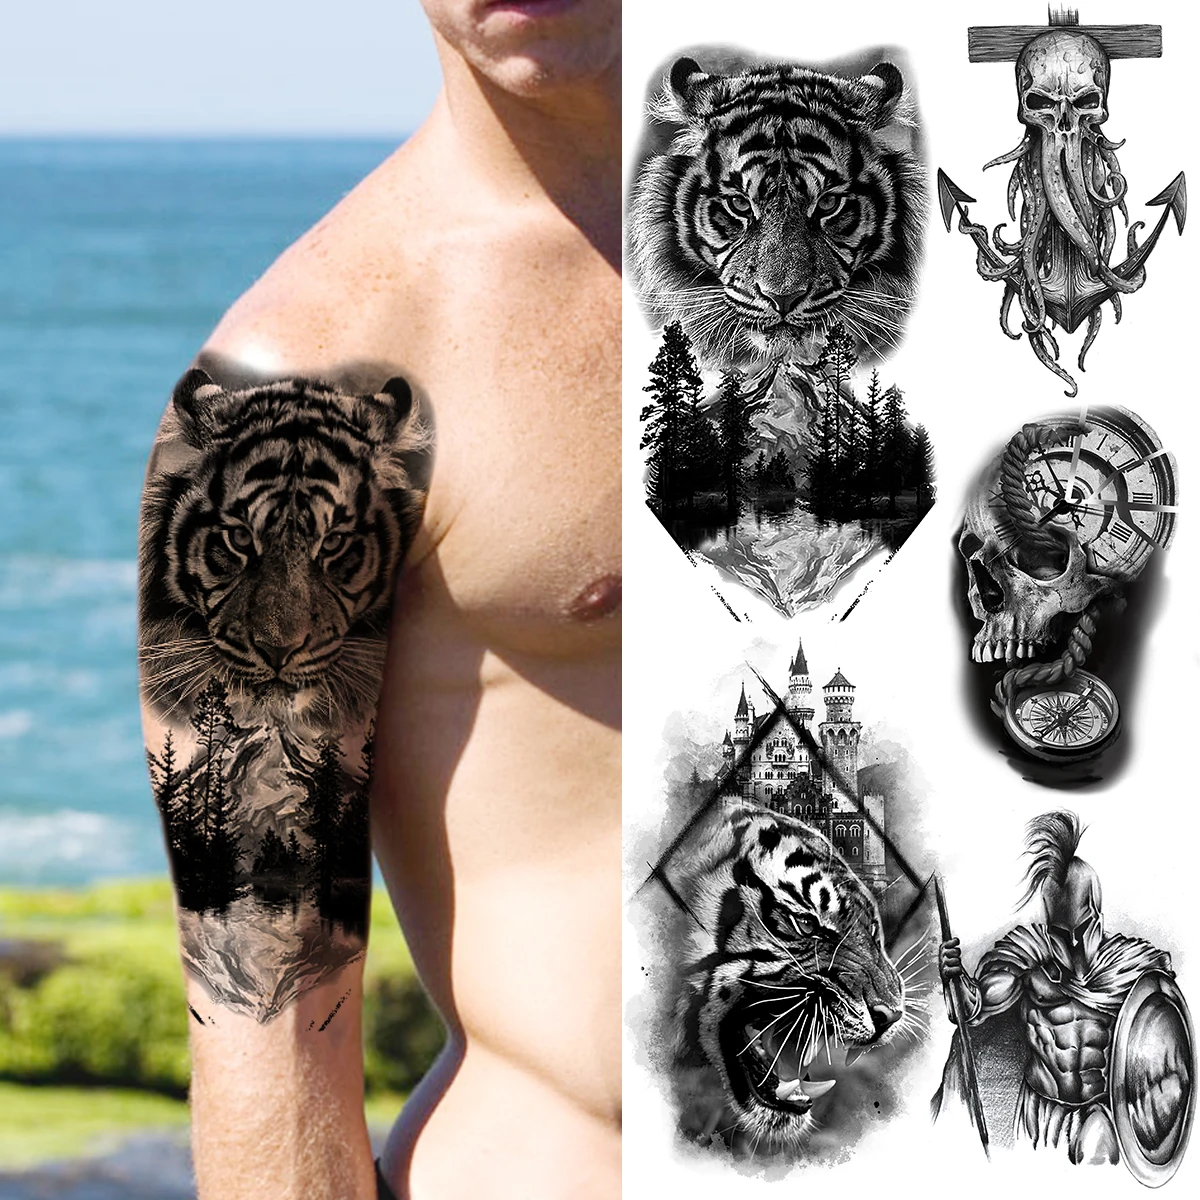 

Реалистичные Временные татуировки для мужчин с изображением Черного Тигра и леса, искусственная татуировка с черепом воина для взрослых, б...